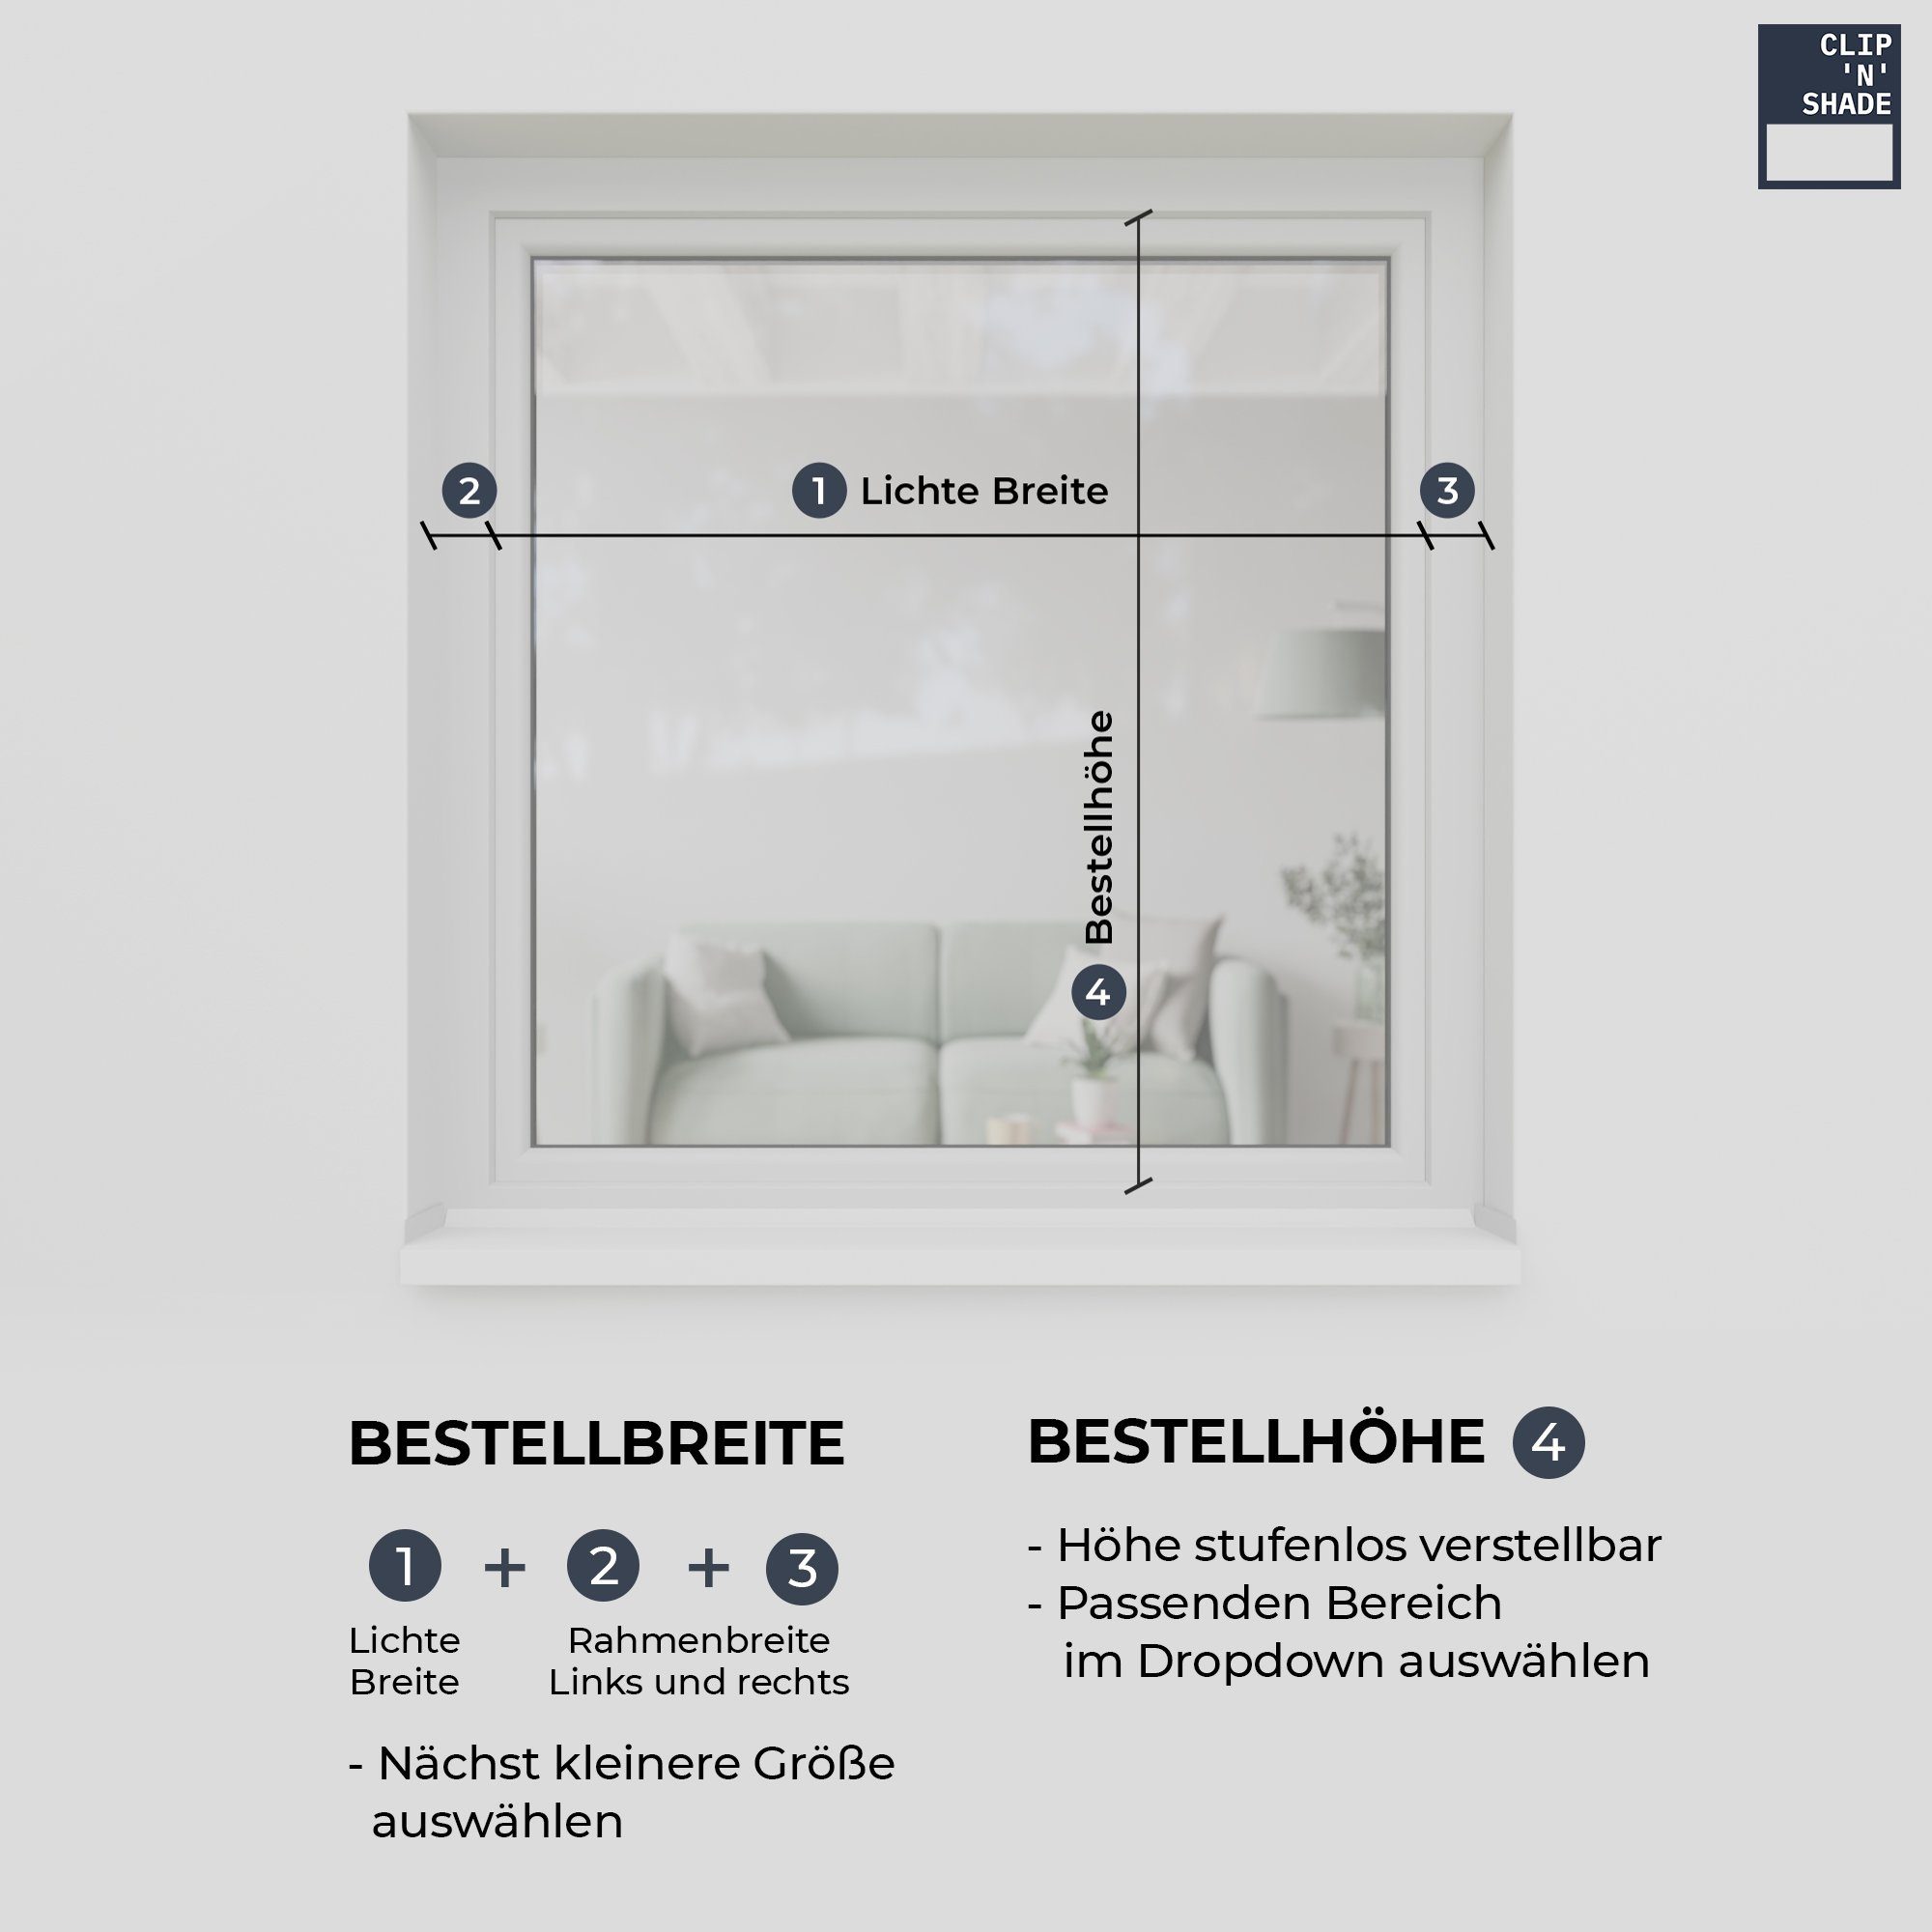 CLIP`N`SHADE, CLIP`N`SHADE Fenster, Aluminiumprofile Klemmmontage, hochwertige Außen Grau Aussenrollo für Balkontüren, Rollo am